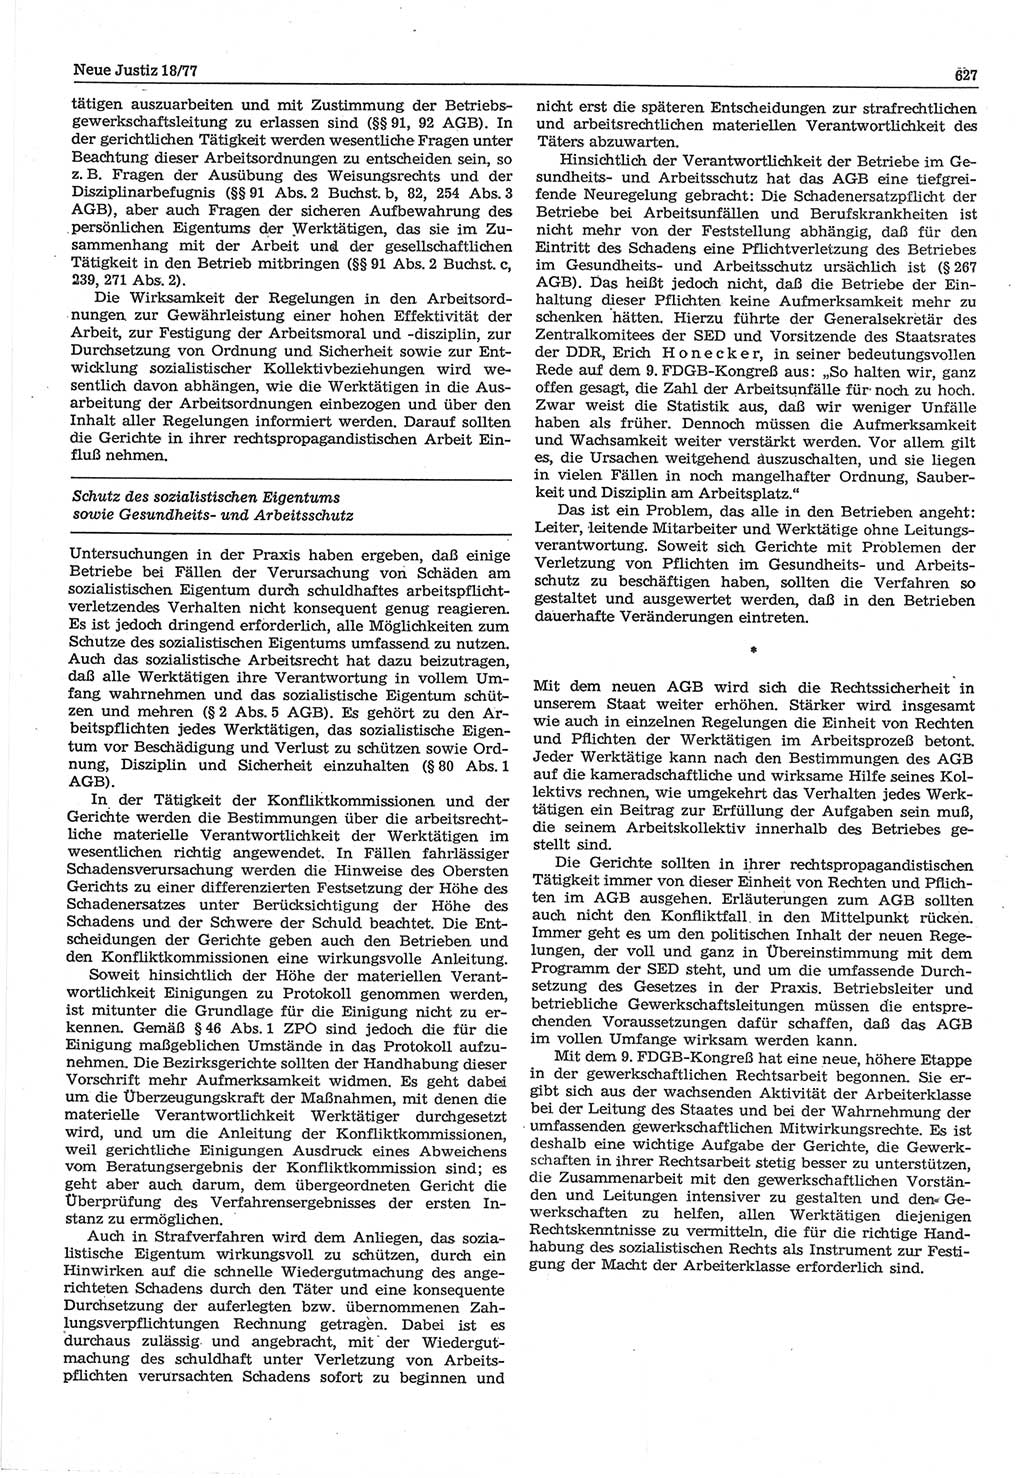 Neue Justiz (NJ), Zeitschrift für Recht und Rechtswissenschaft-Zeitschrift, sozialistisches Recht und Gesetzlichkeit, 31. Jahrgang 1977, Seite 627 (NJ DDR 1977, S. 627)